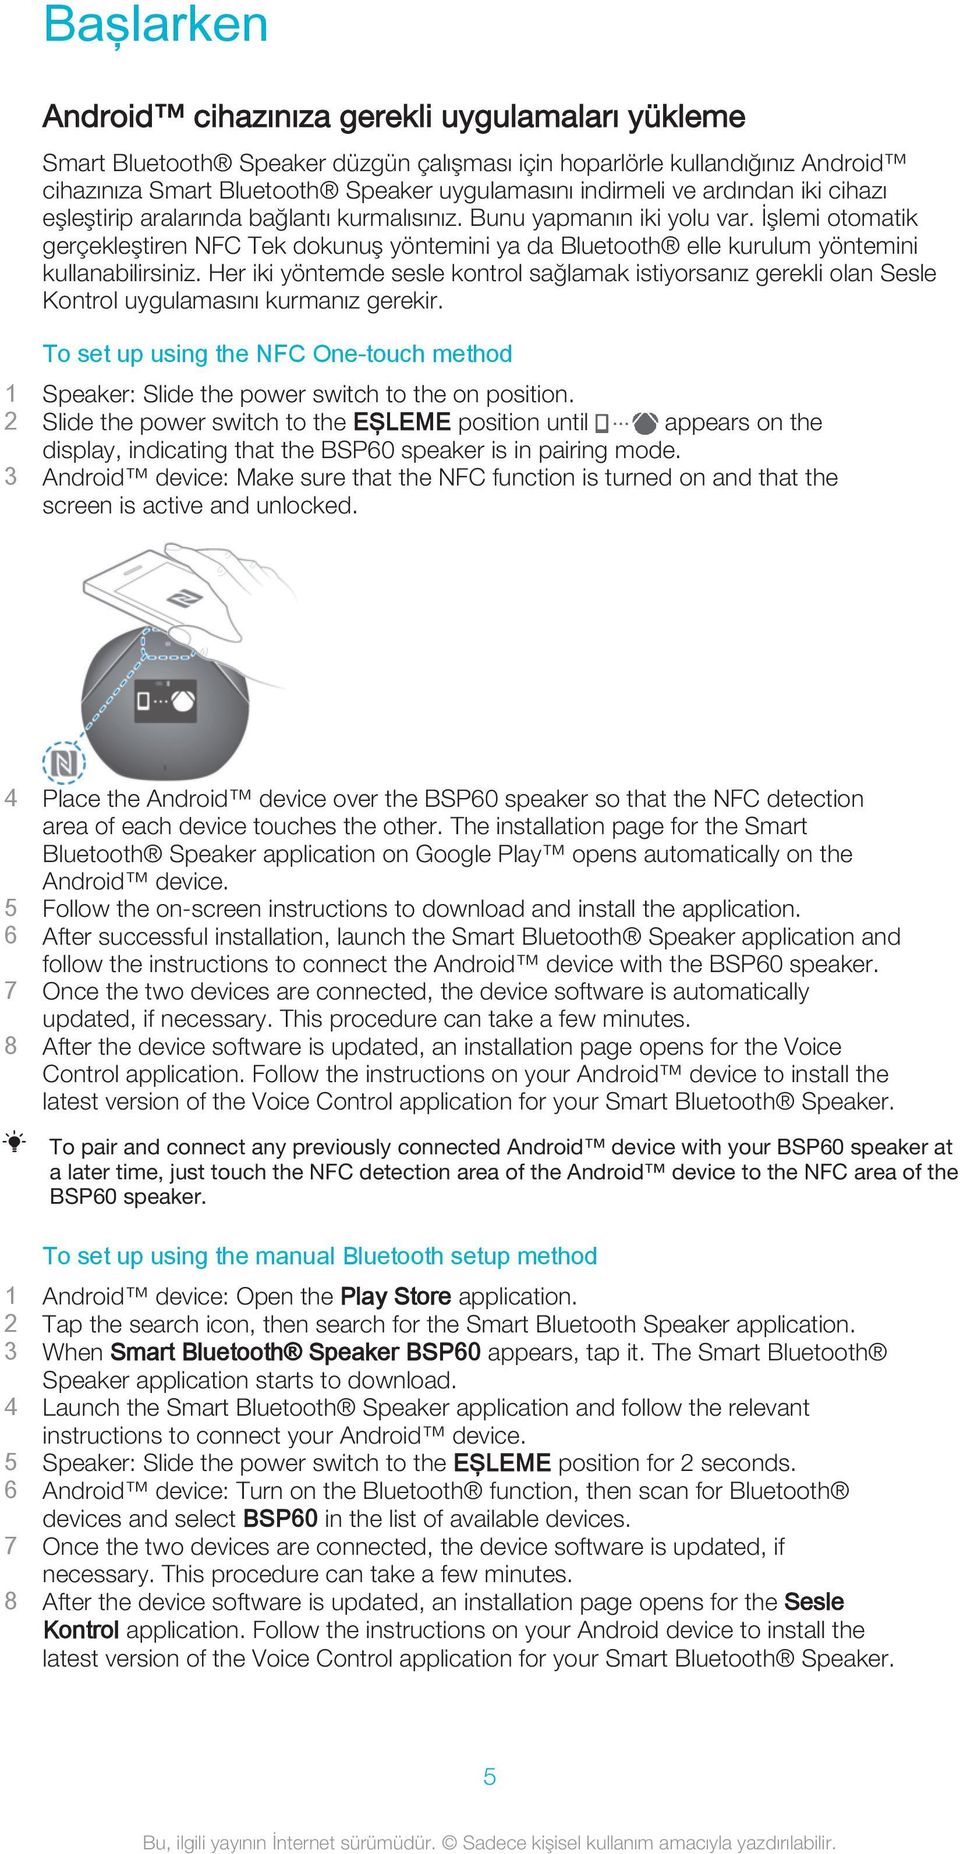 İşlemi otomatik gerçekleştiren NFC Tek dokunuş yöntemini ya da Bluetooth elle kurulum yöntemini kullanabilirsiniz.